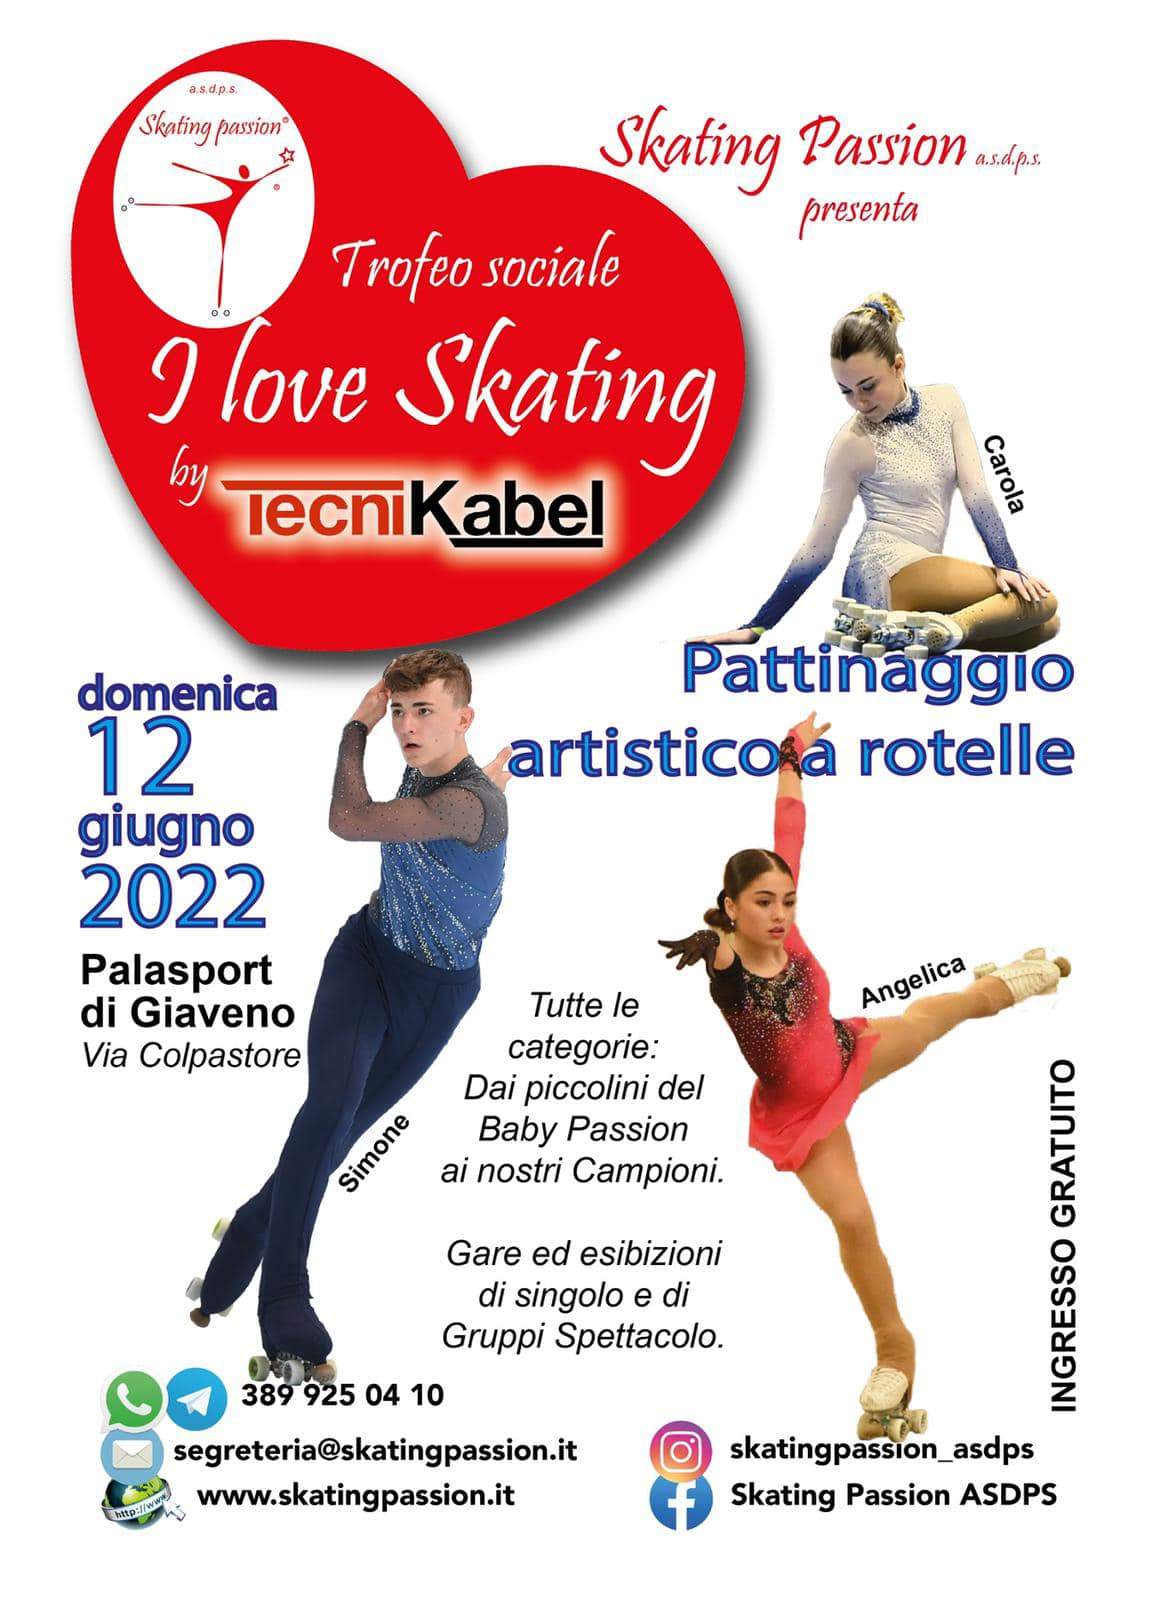 12 giugno 2022 - Trofeo "I love Skating" by Tecnikabel